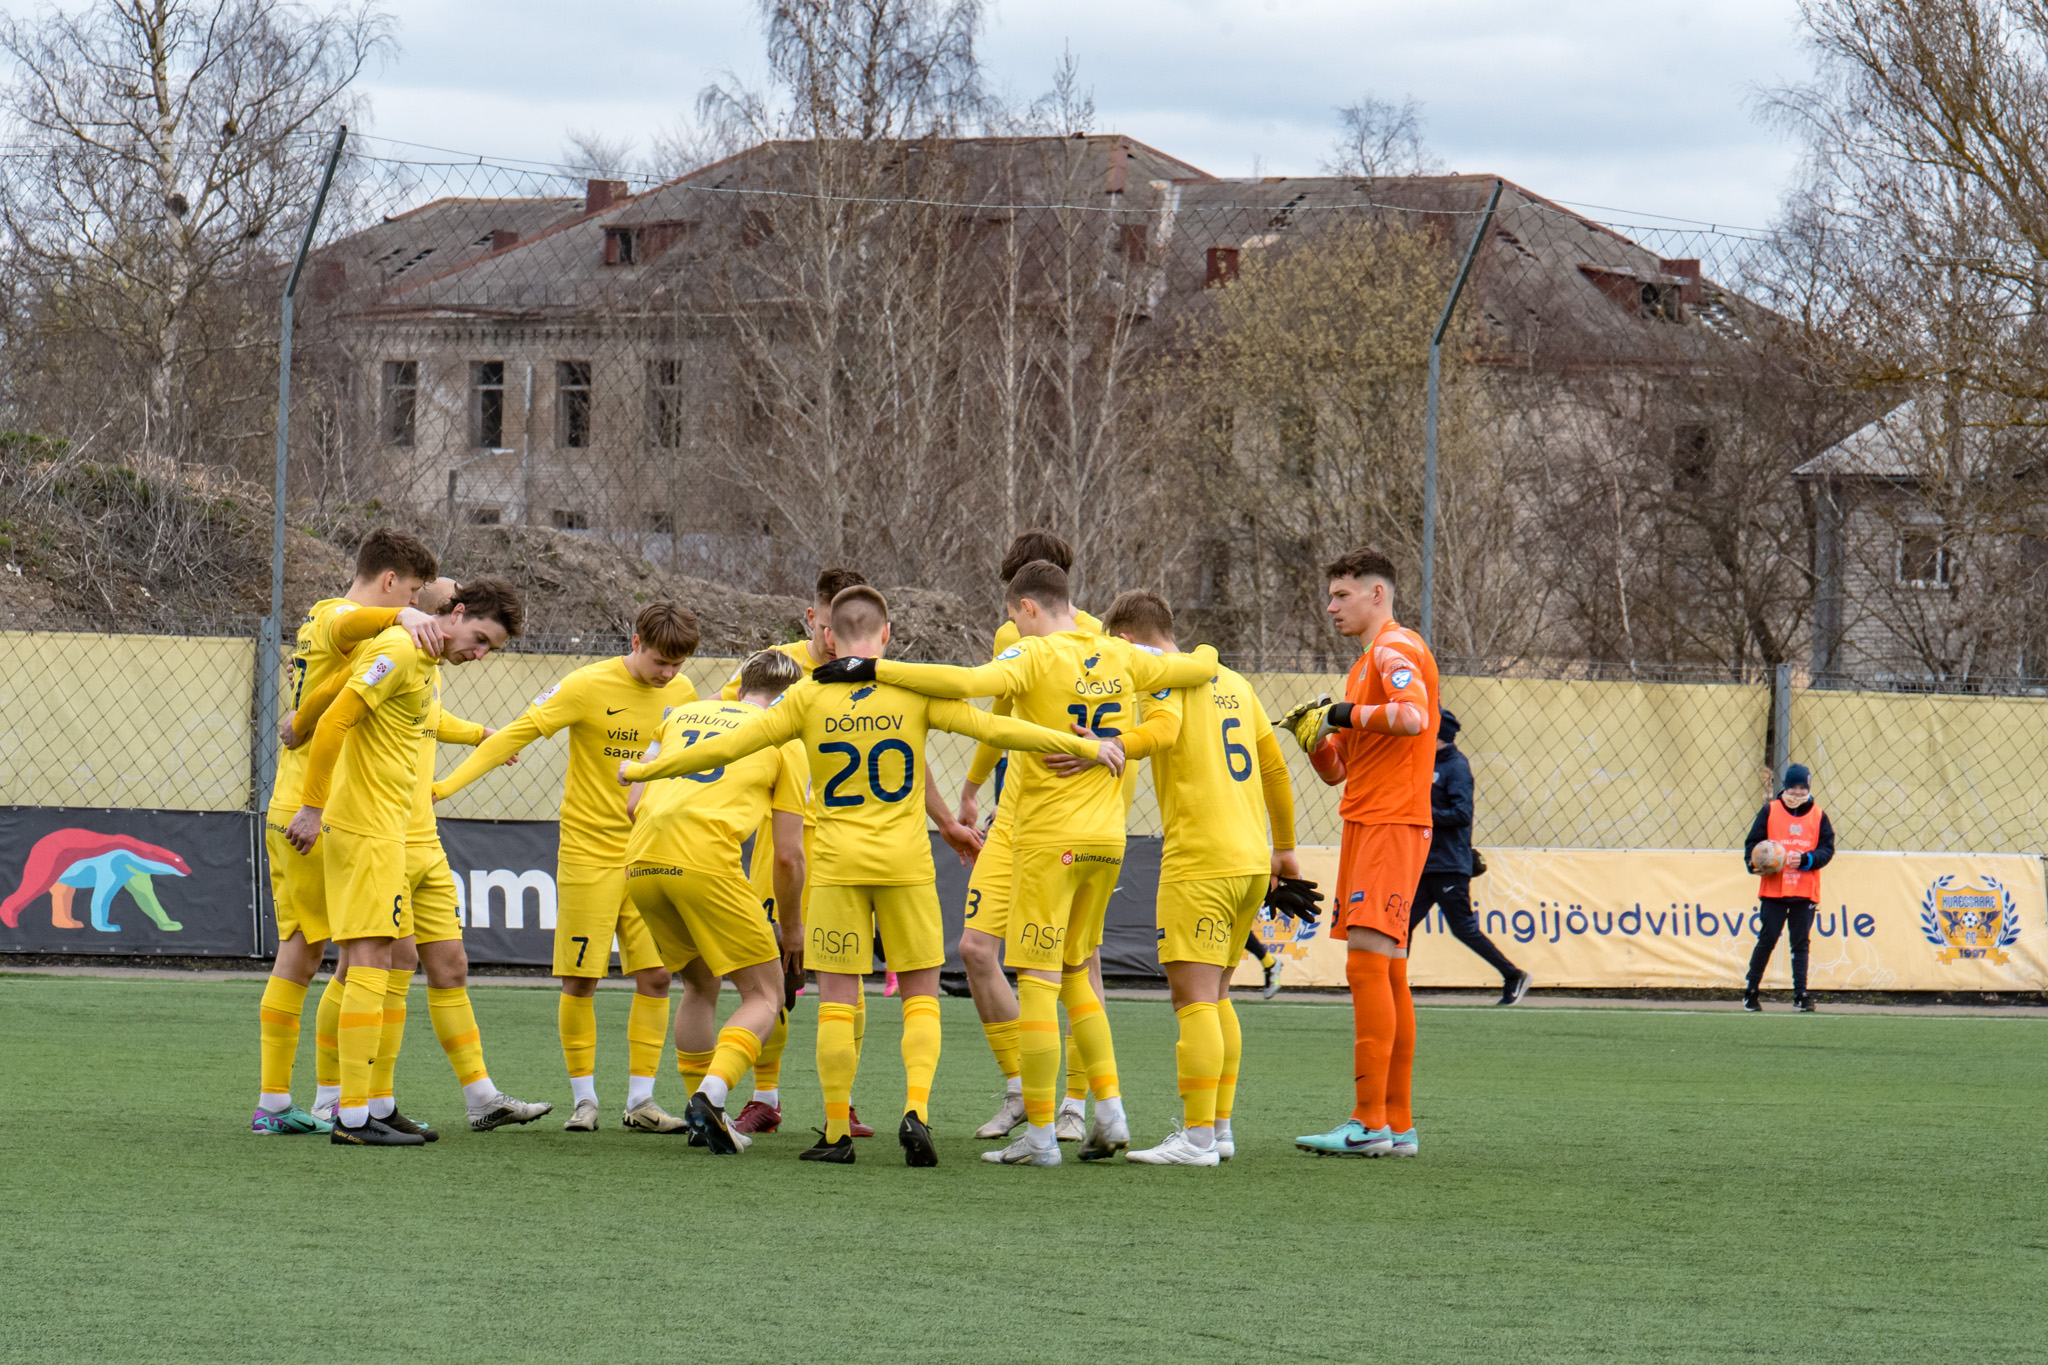 Premium liigas viigistas FC Kuressaare võõrsil 1:1 Nõmme Unitedi meeskonnaga. Kure asus juhtima 31. minutil, kui Joonas Soomre realiseeris Karl Rudolf Õiguse ts